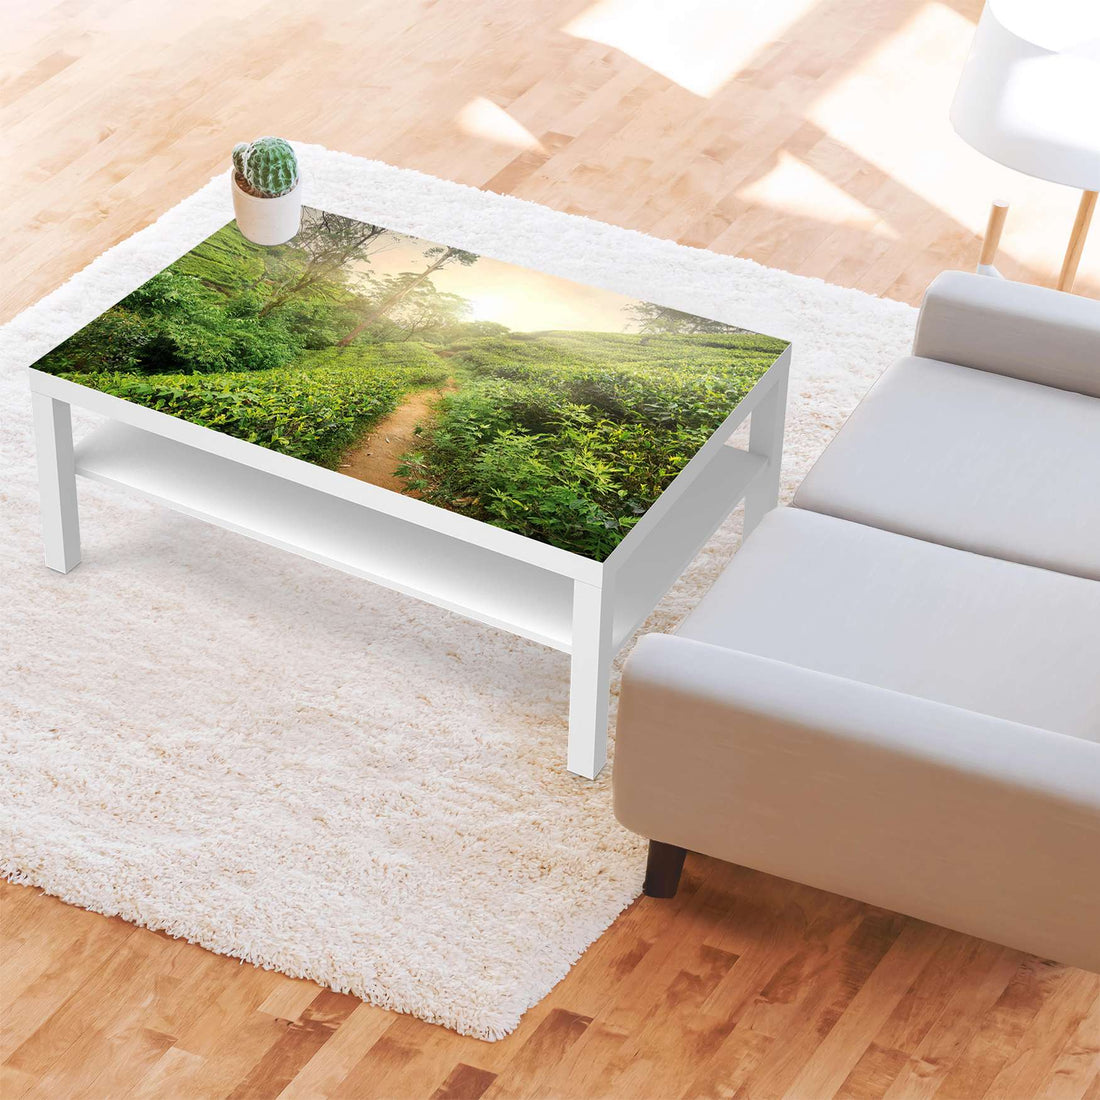 Klebefolie Green Tea Fields - IKEA Lack Tisch 118x78 cm - Wohnzimmer